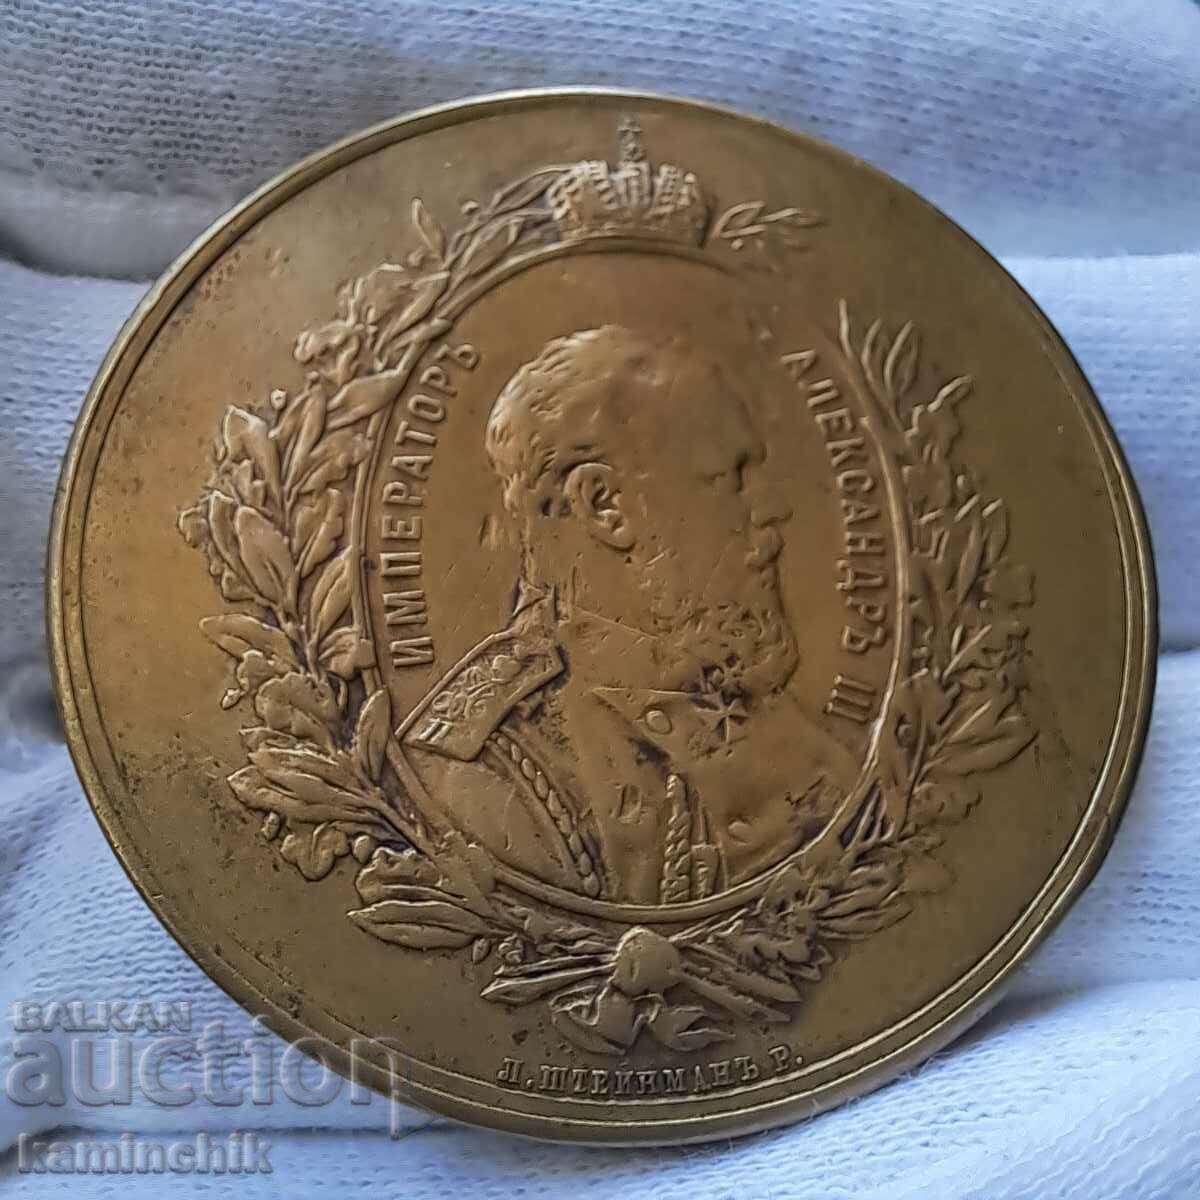 Μετάλλιο Alexander III, 1882. Πρωτότυπο